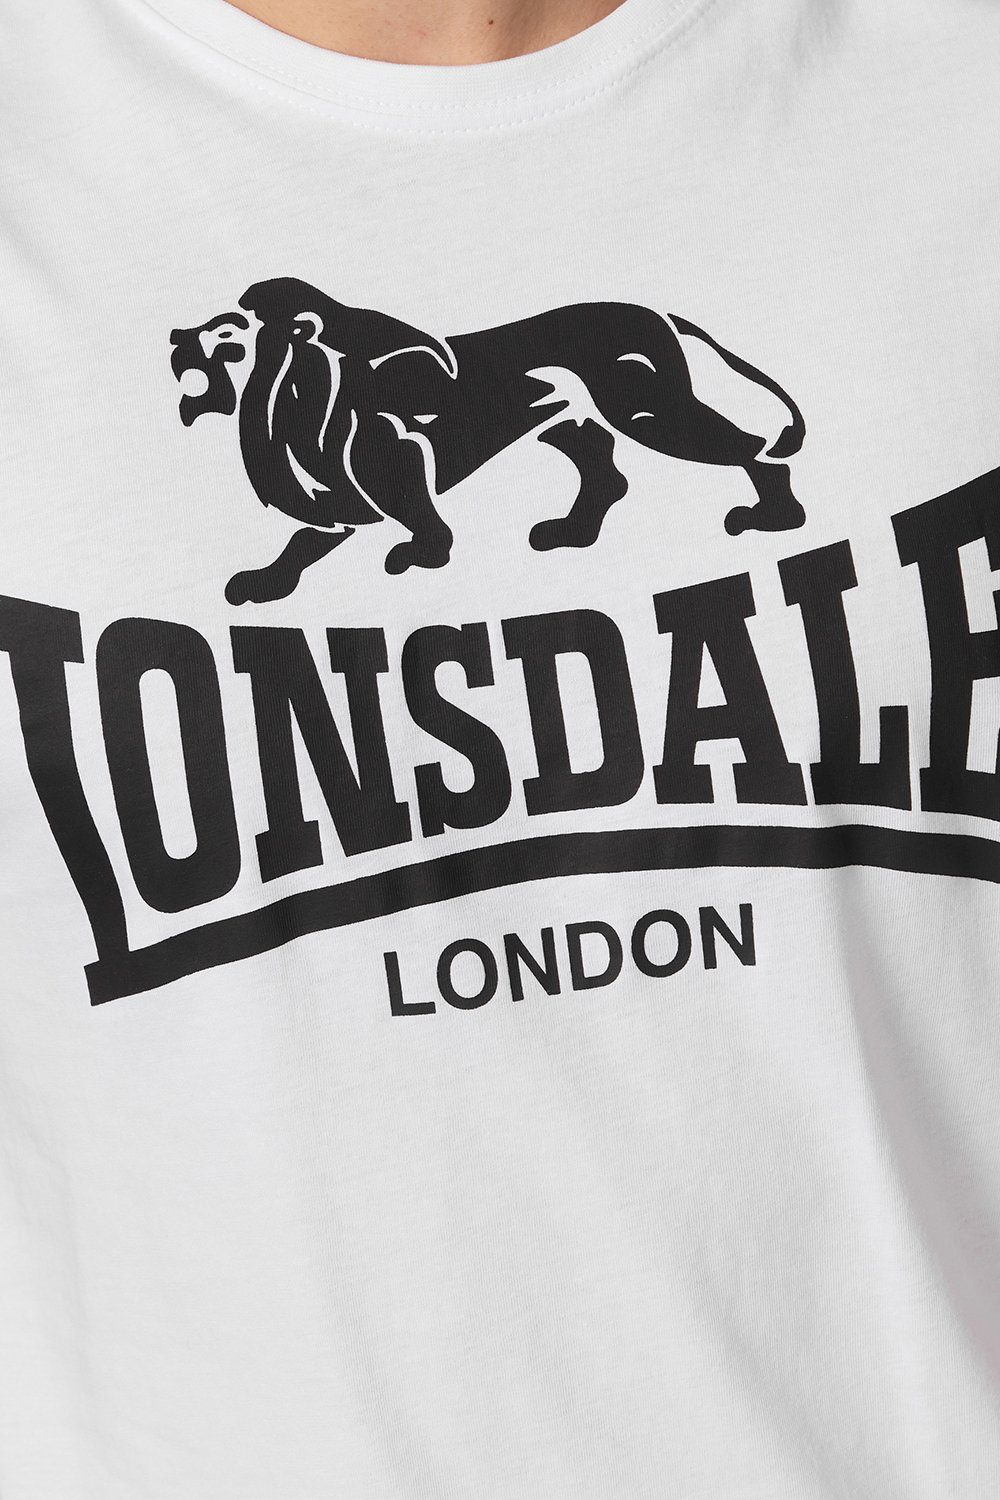 Lonsdale T-Shirt LOGO White